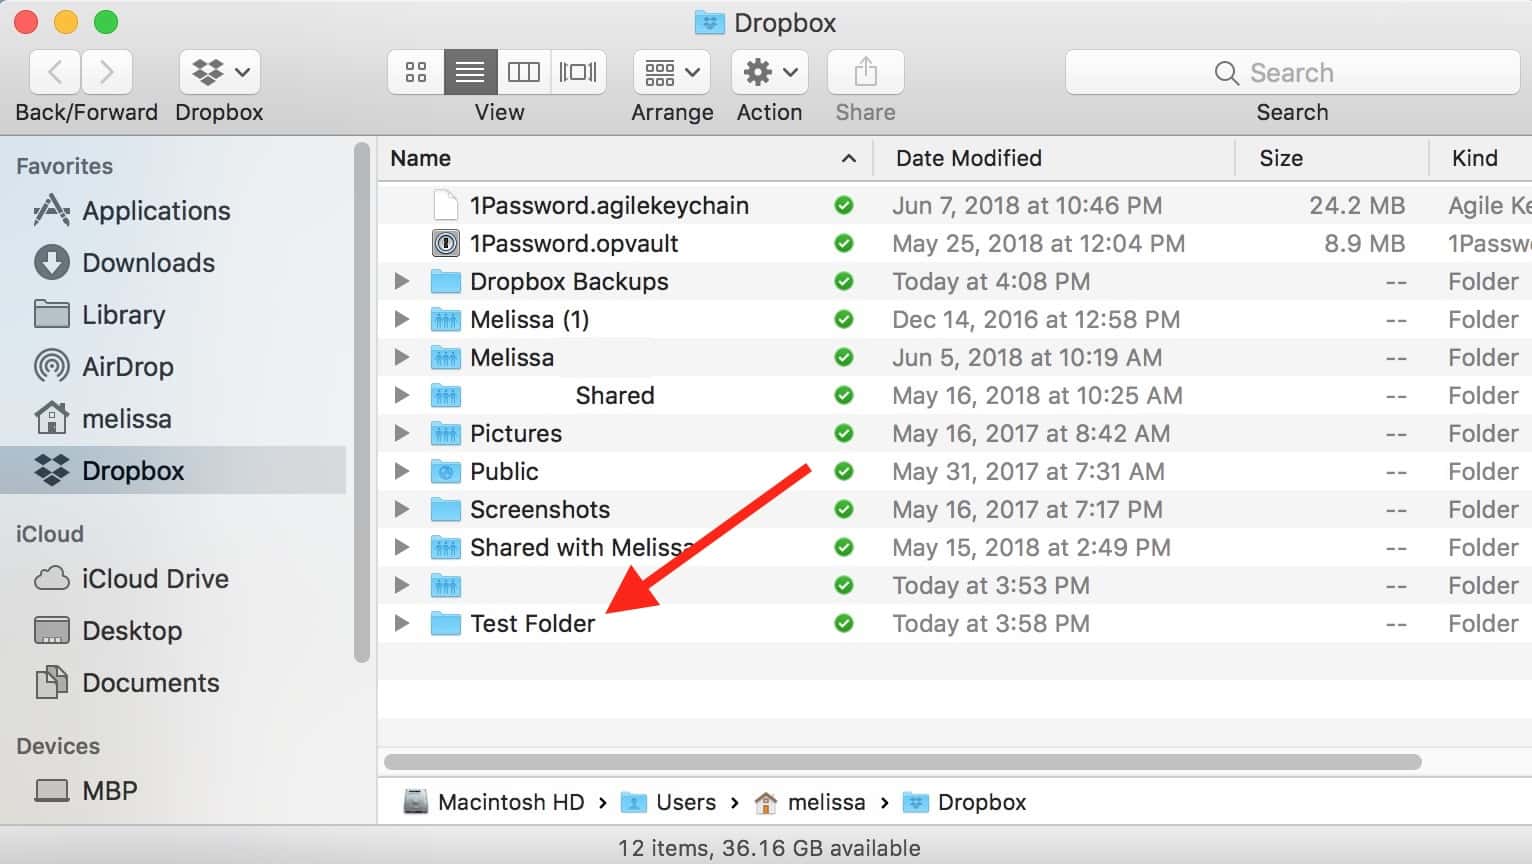 Folder in Dropbox ready to merge with folder on Mac desktop